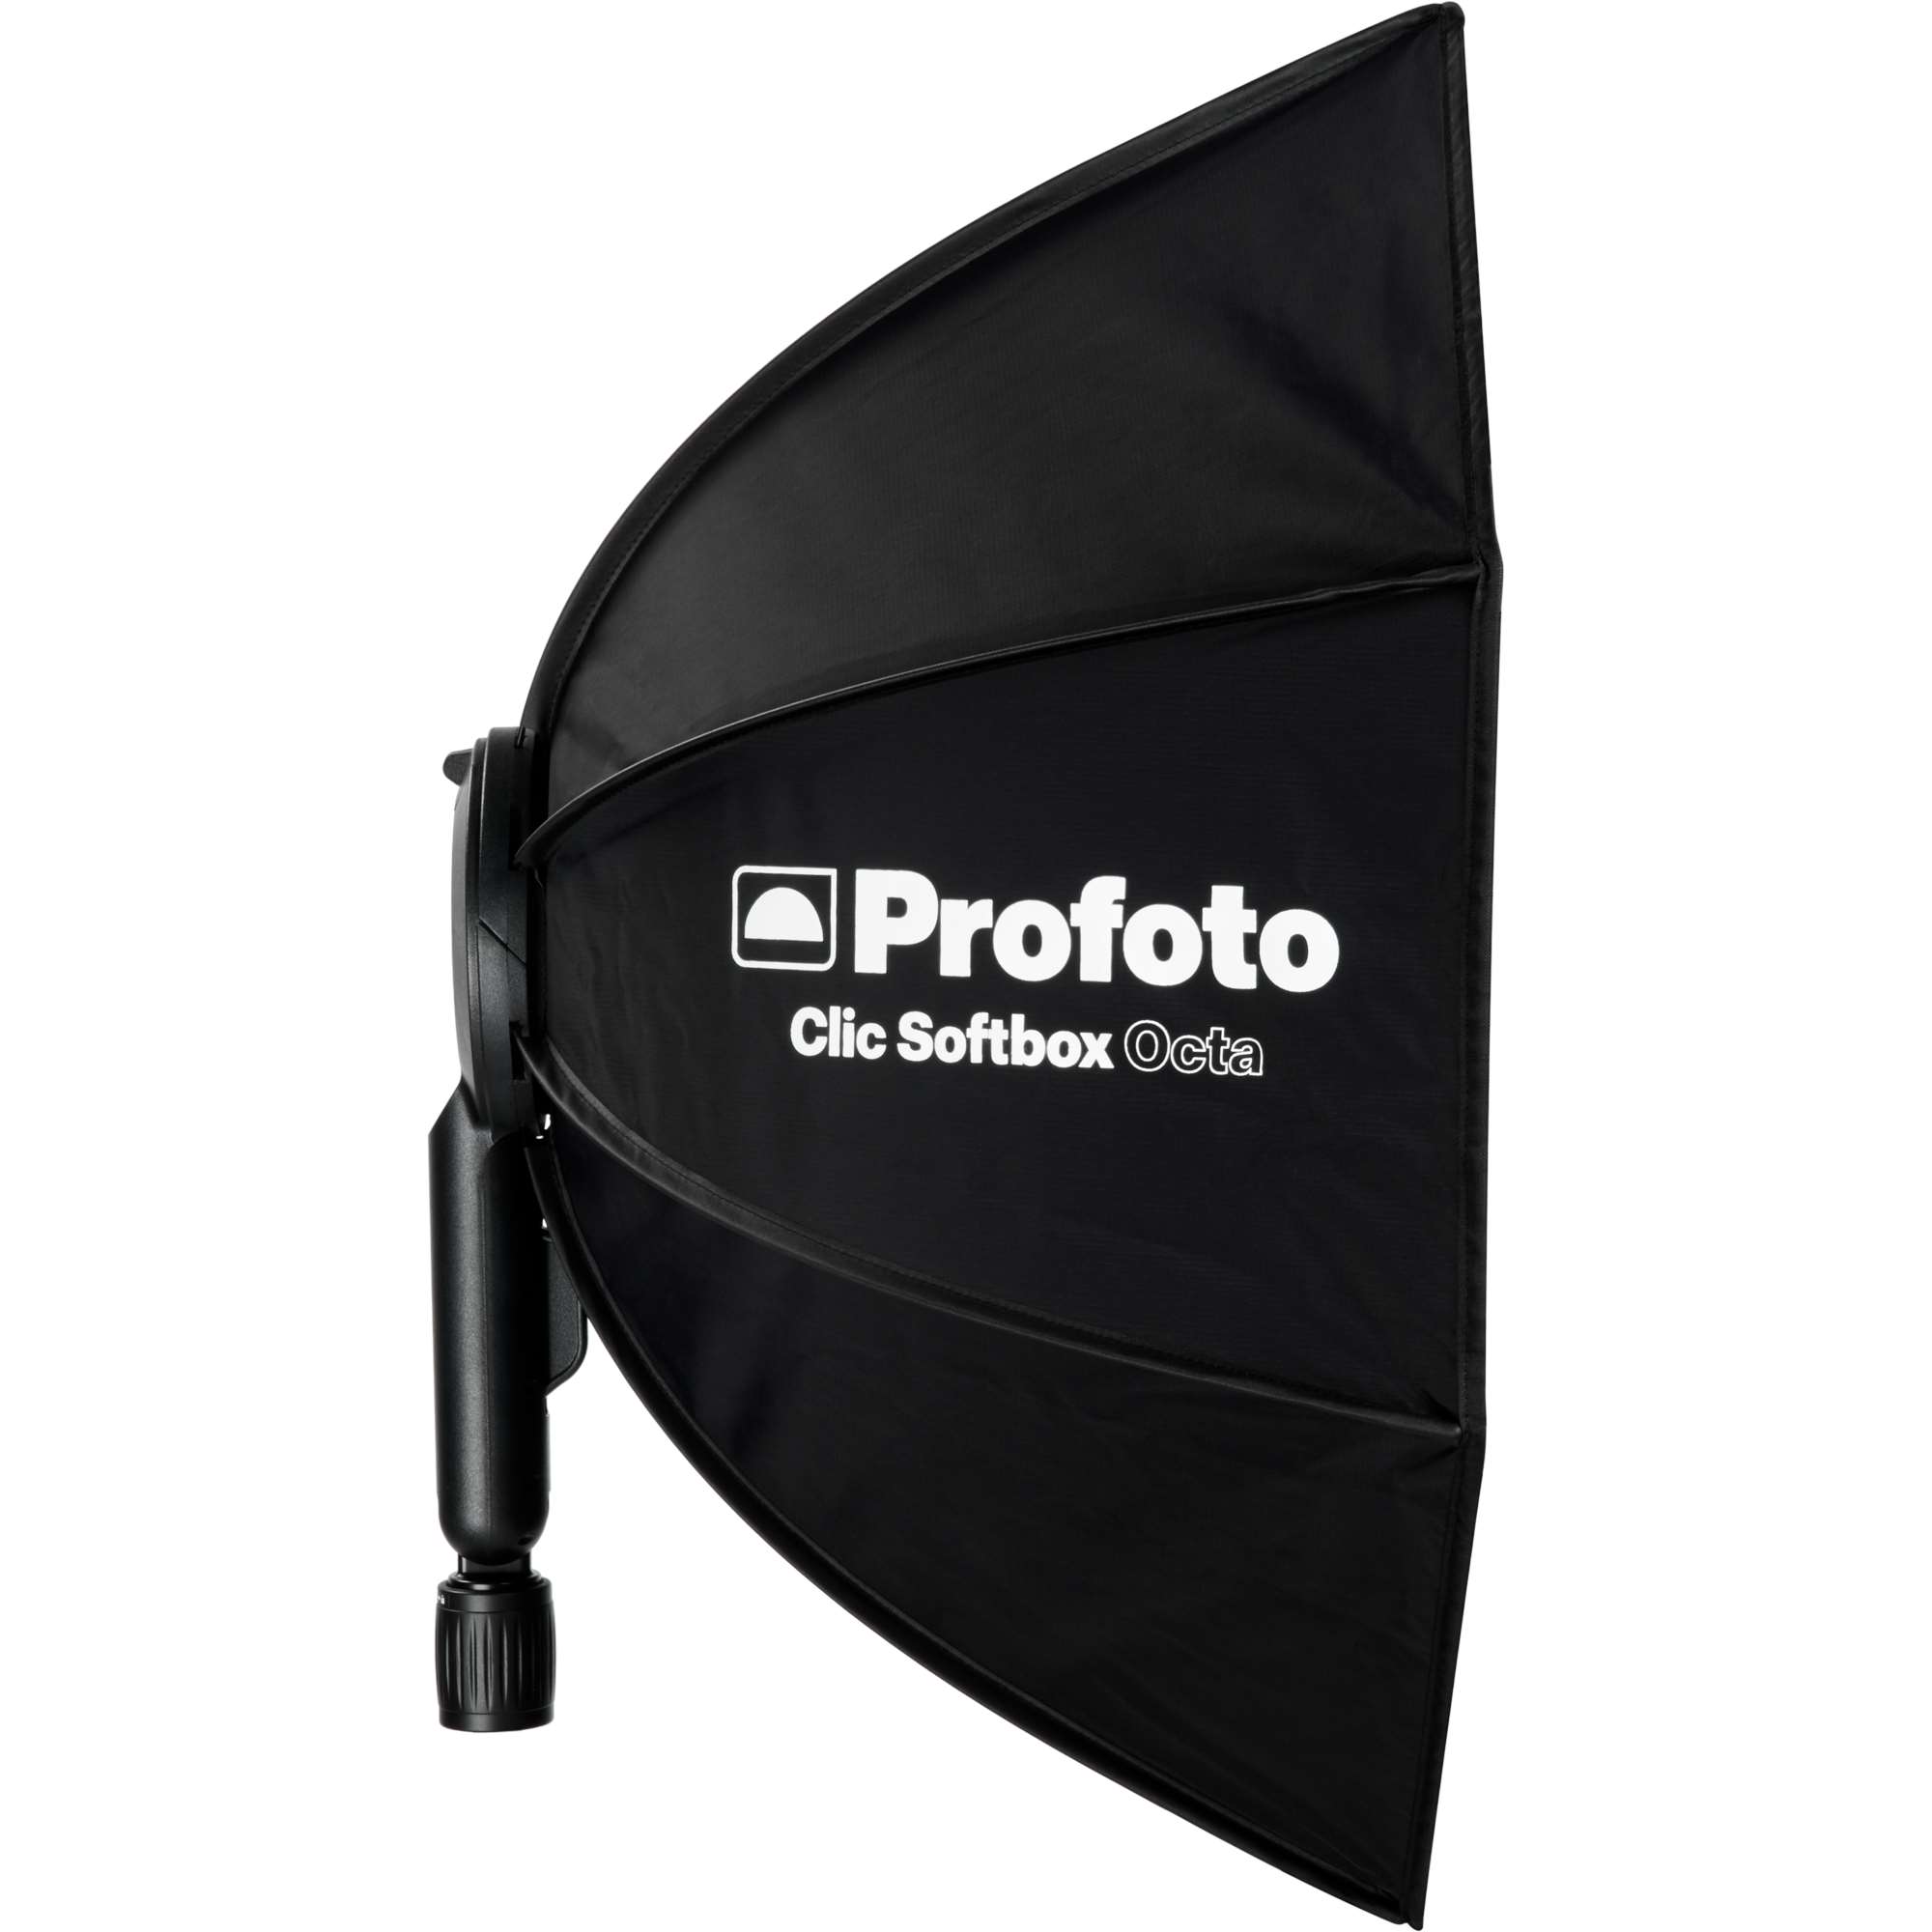 Profoto Clic Softbox Octa 2' (60cm)